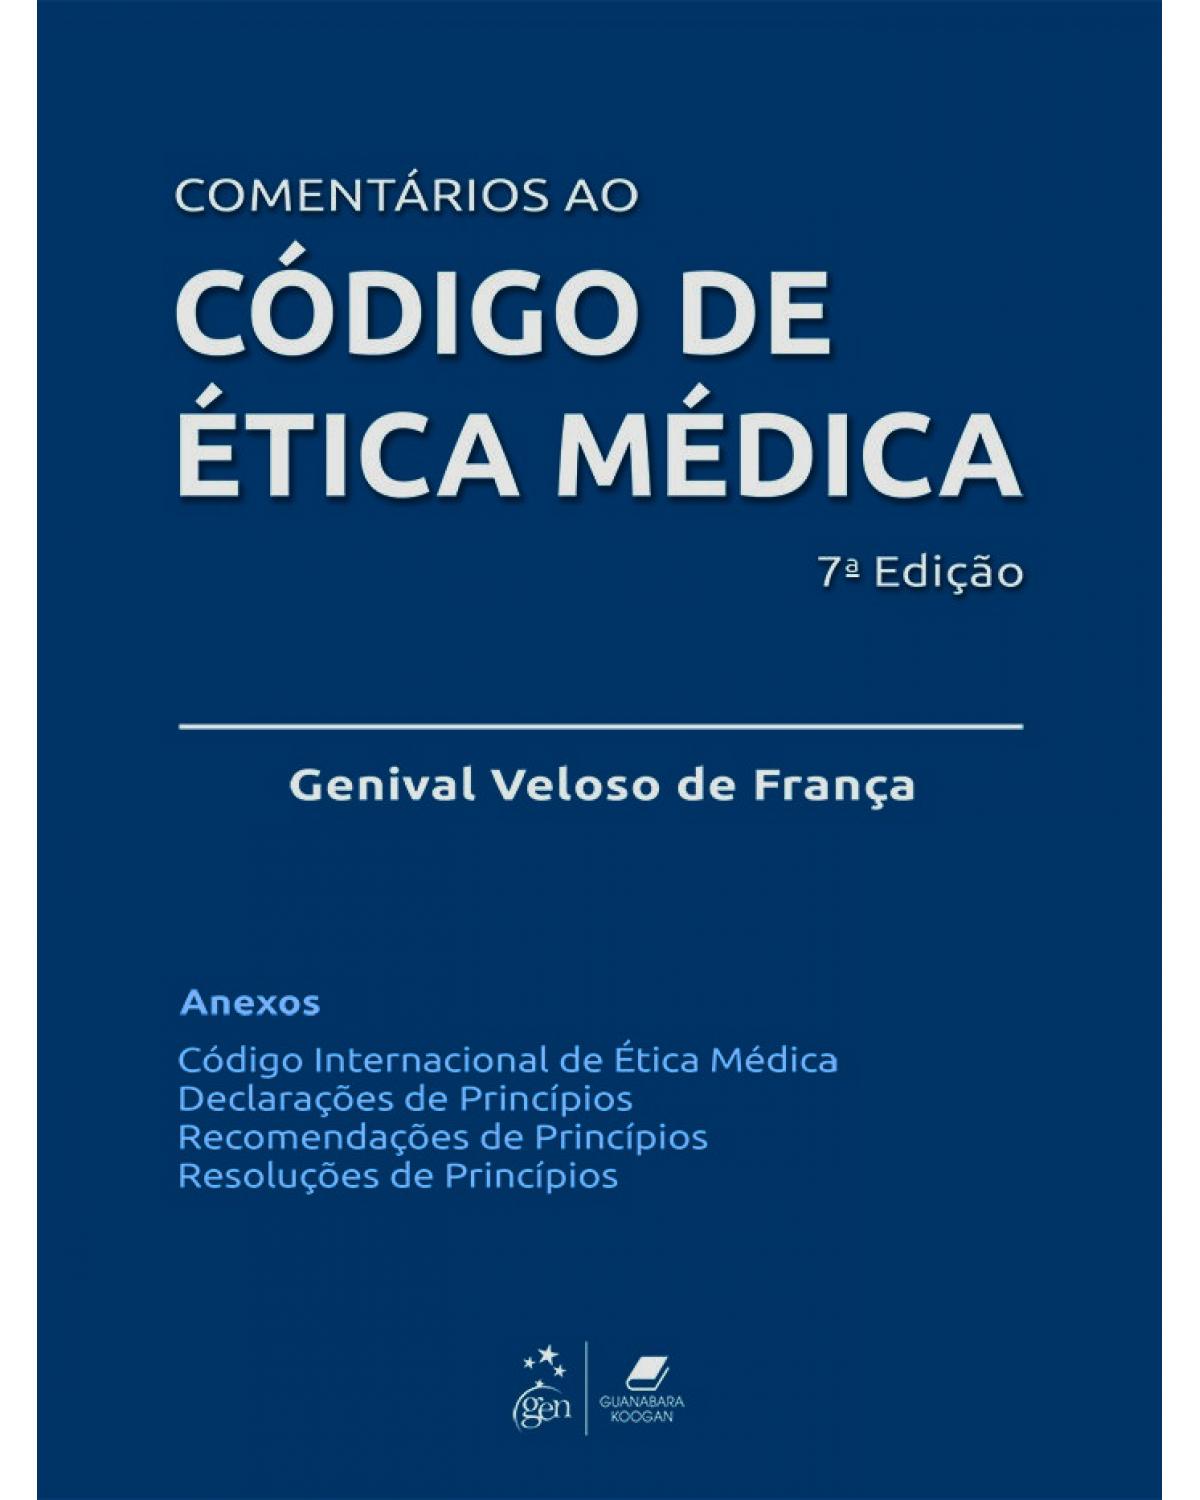 Comentários ao código de ética médica - 7ª Edição | 2019